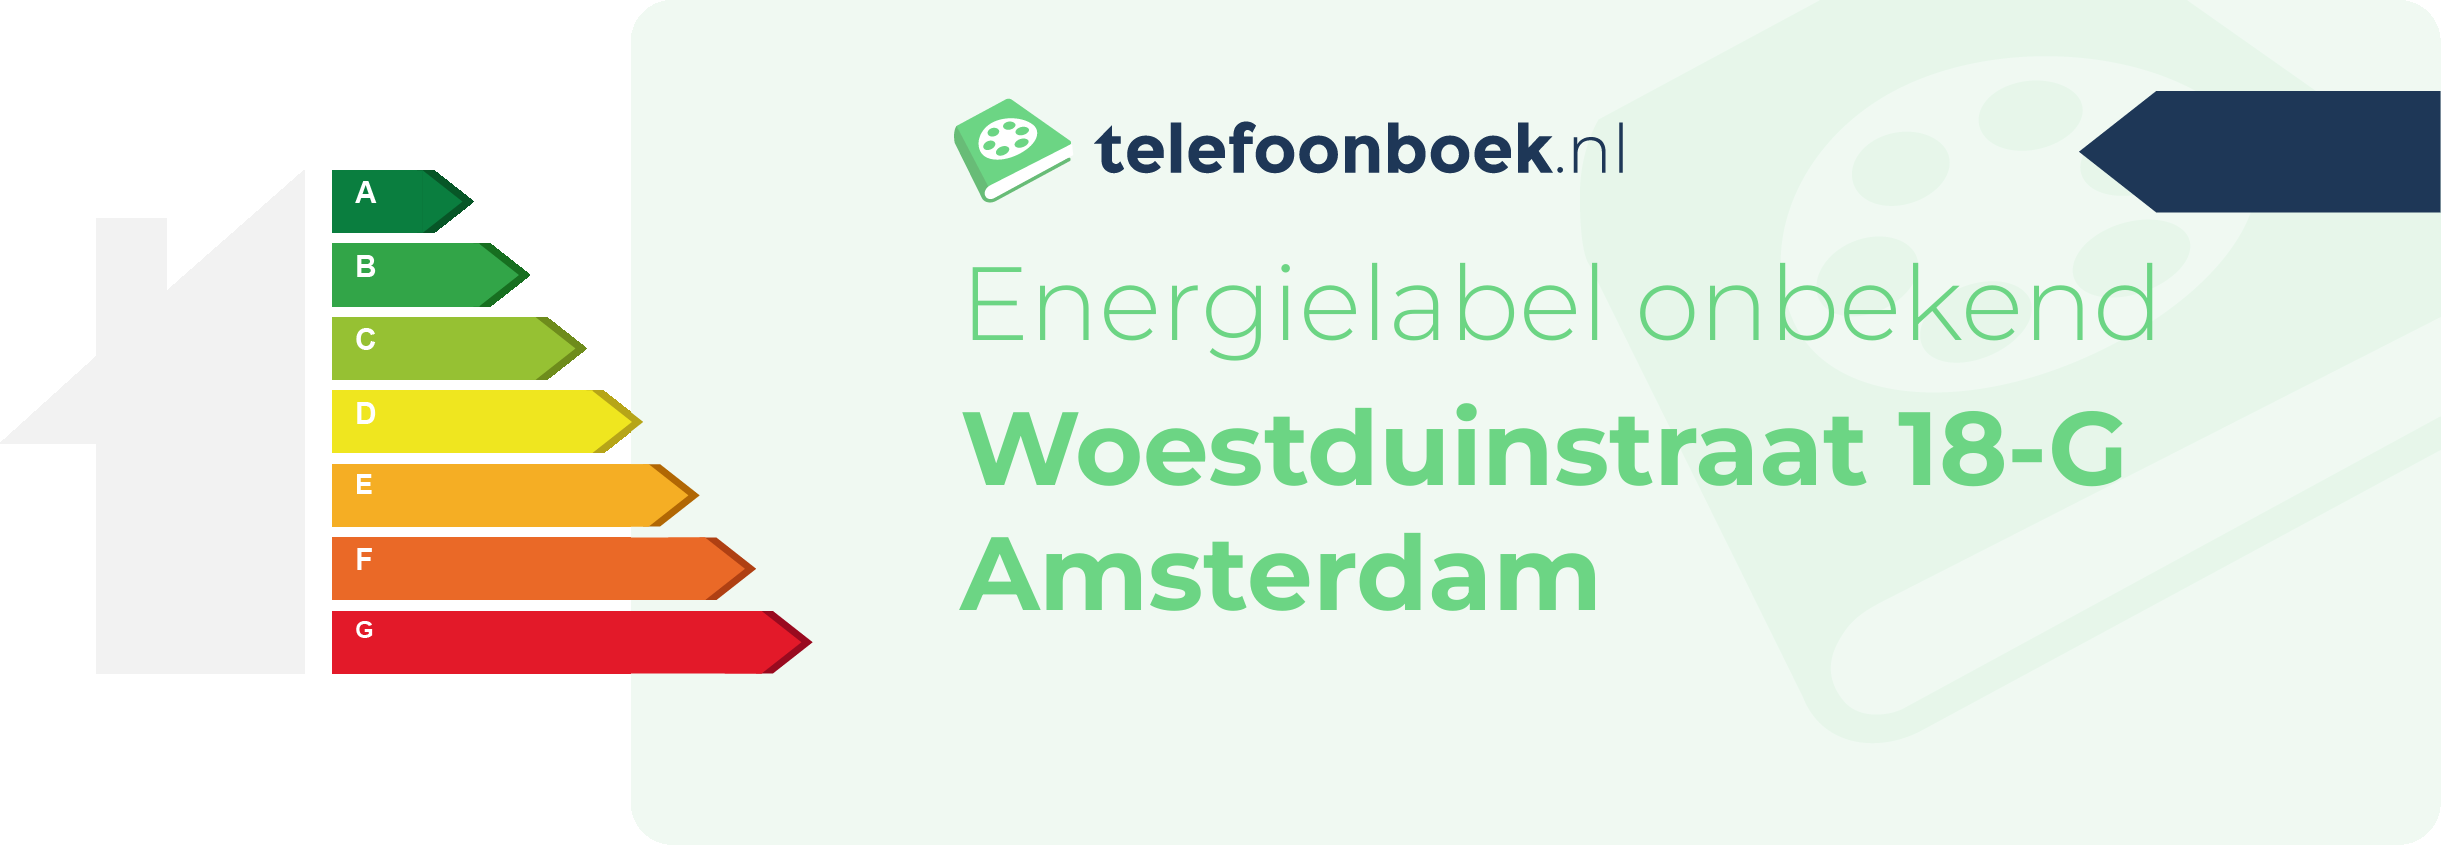 Energielabel Woestduinstraat 18-G Amsterdam